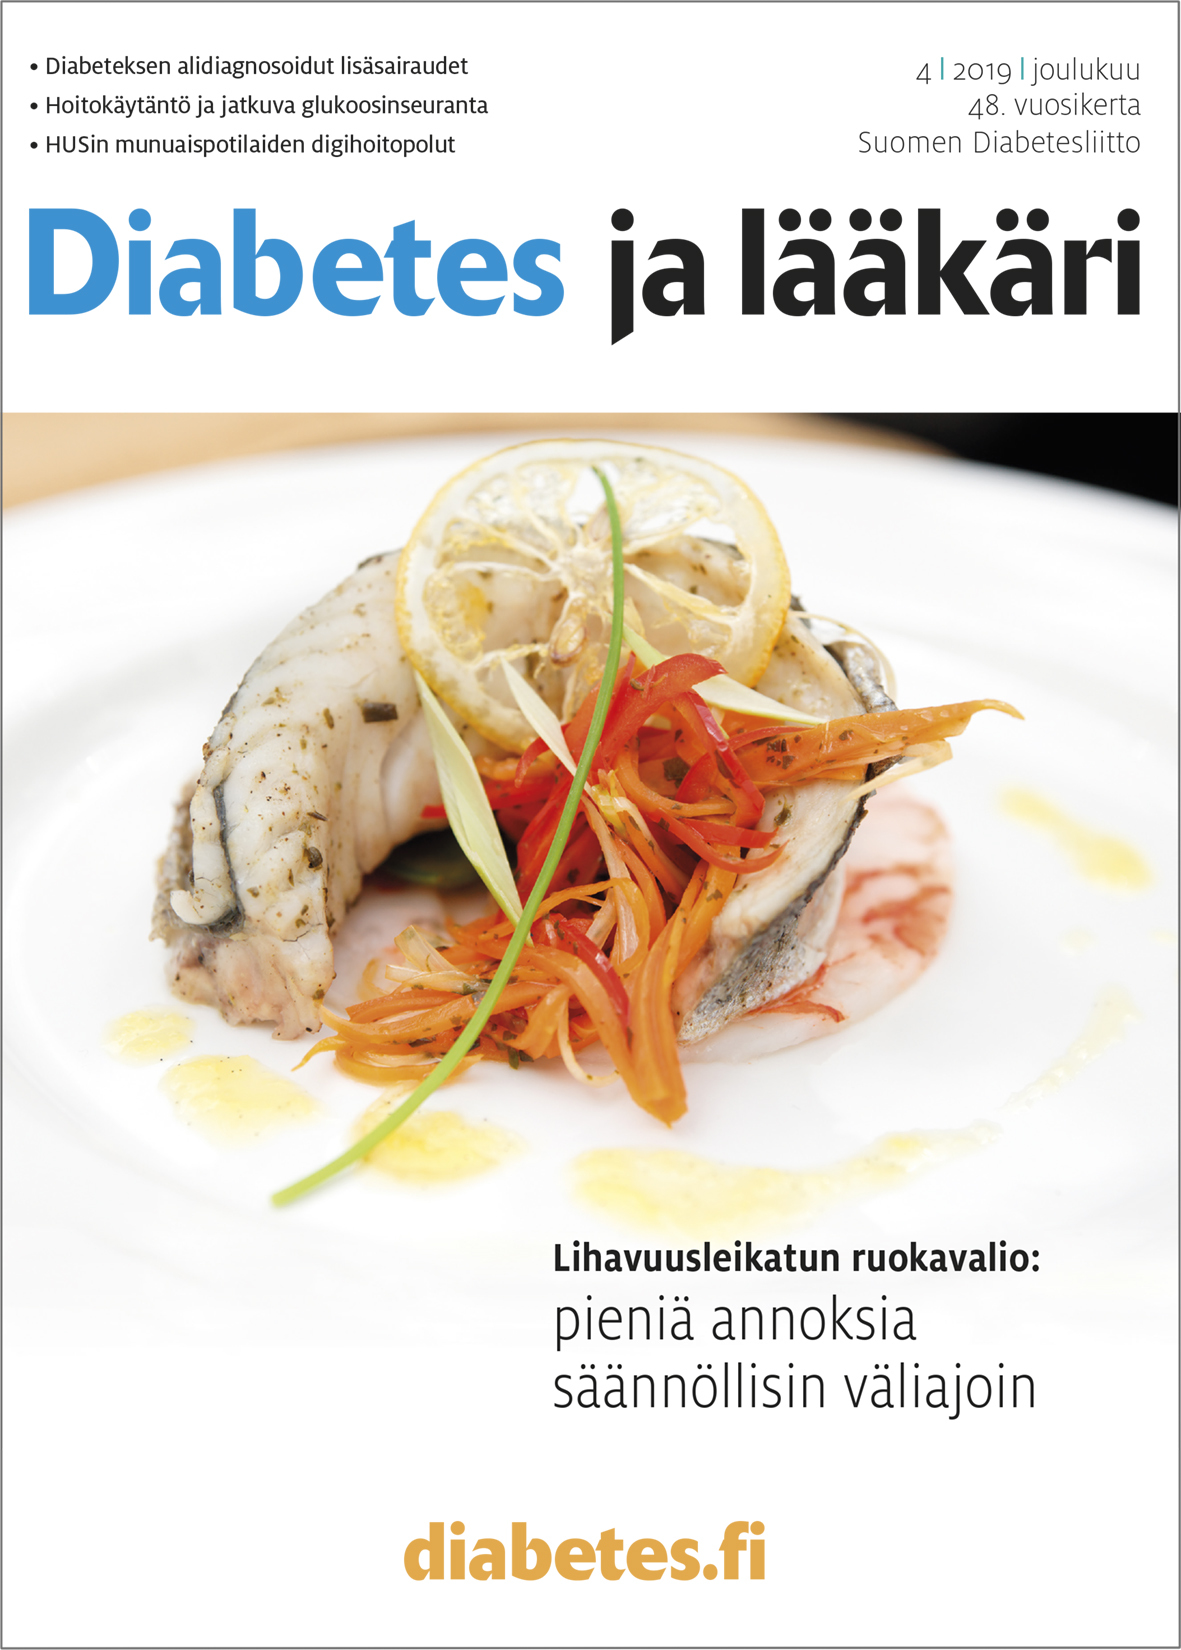 Diabetes ja lääkäri -lehti muistuttaa diabeteksen lisäsairauksien laajasta  kirjosta: Kysy, kuuntele ja tutki - Diabetesliitto